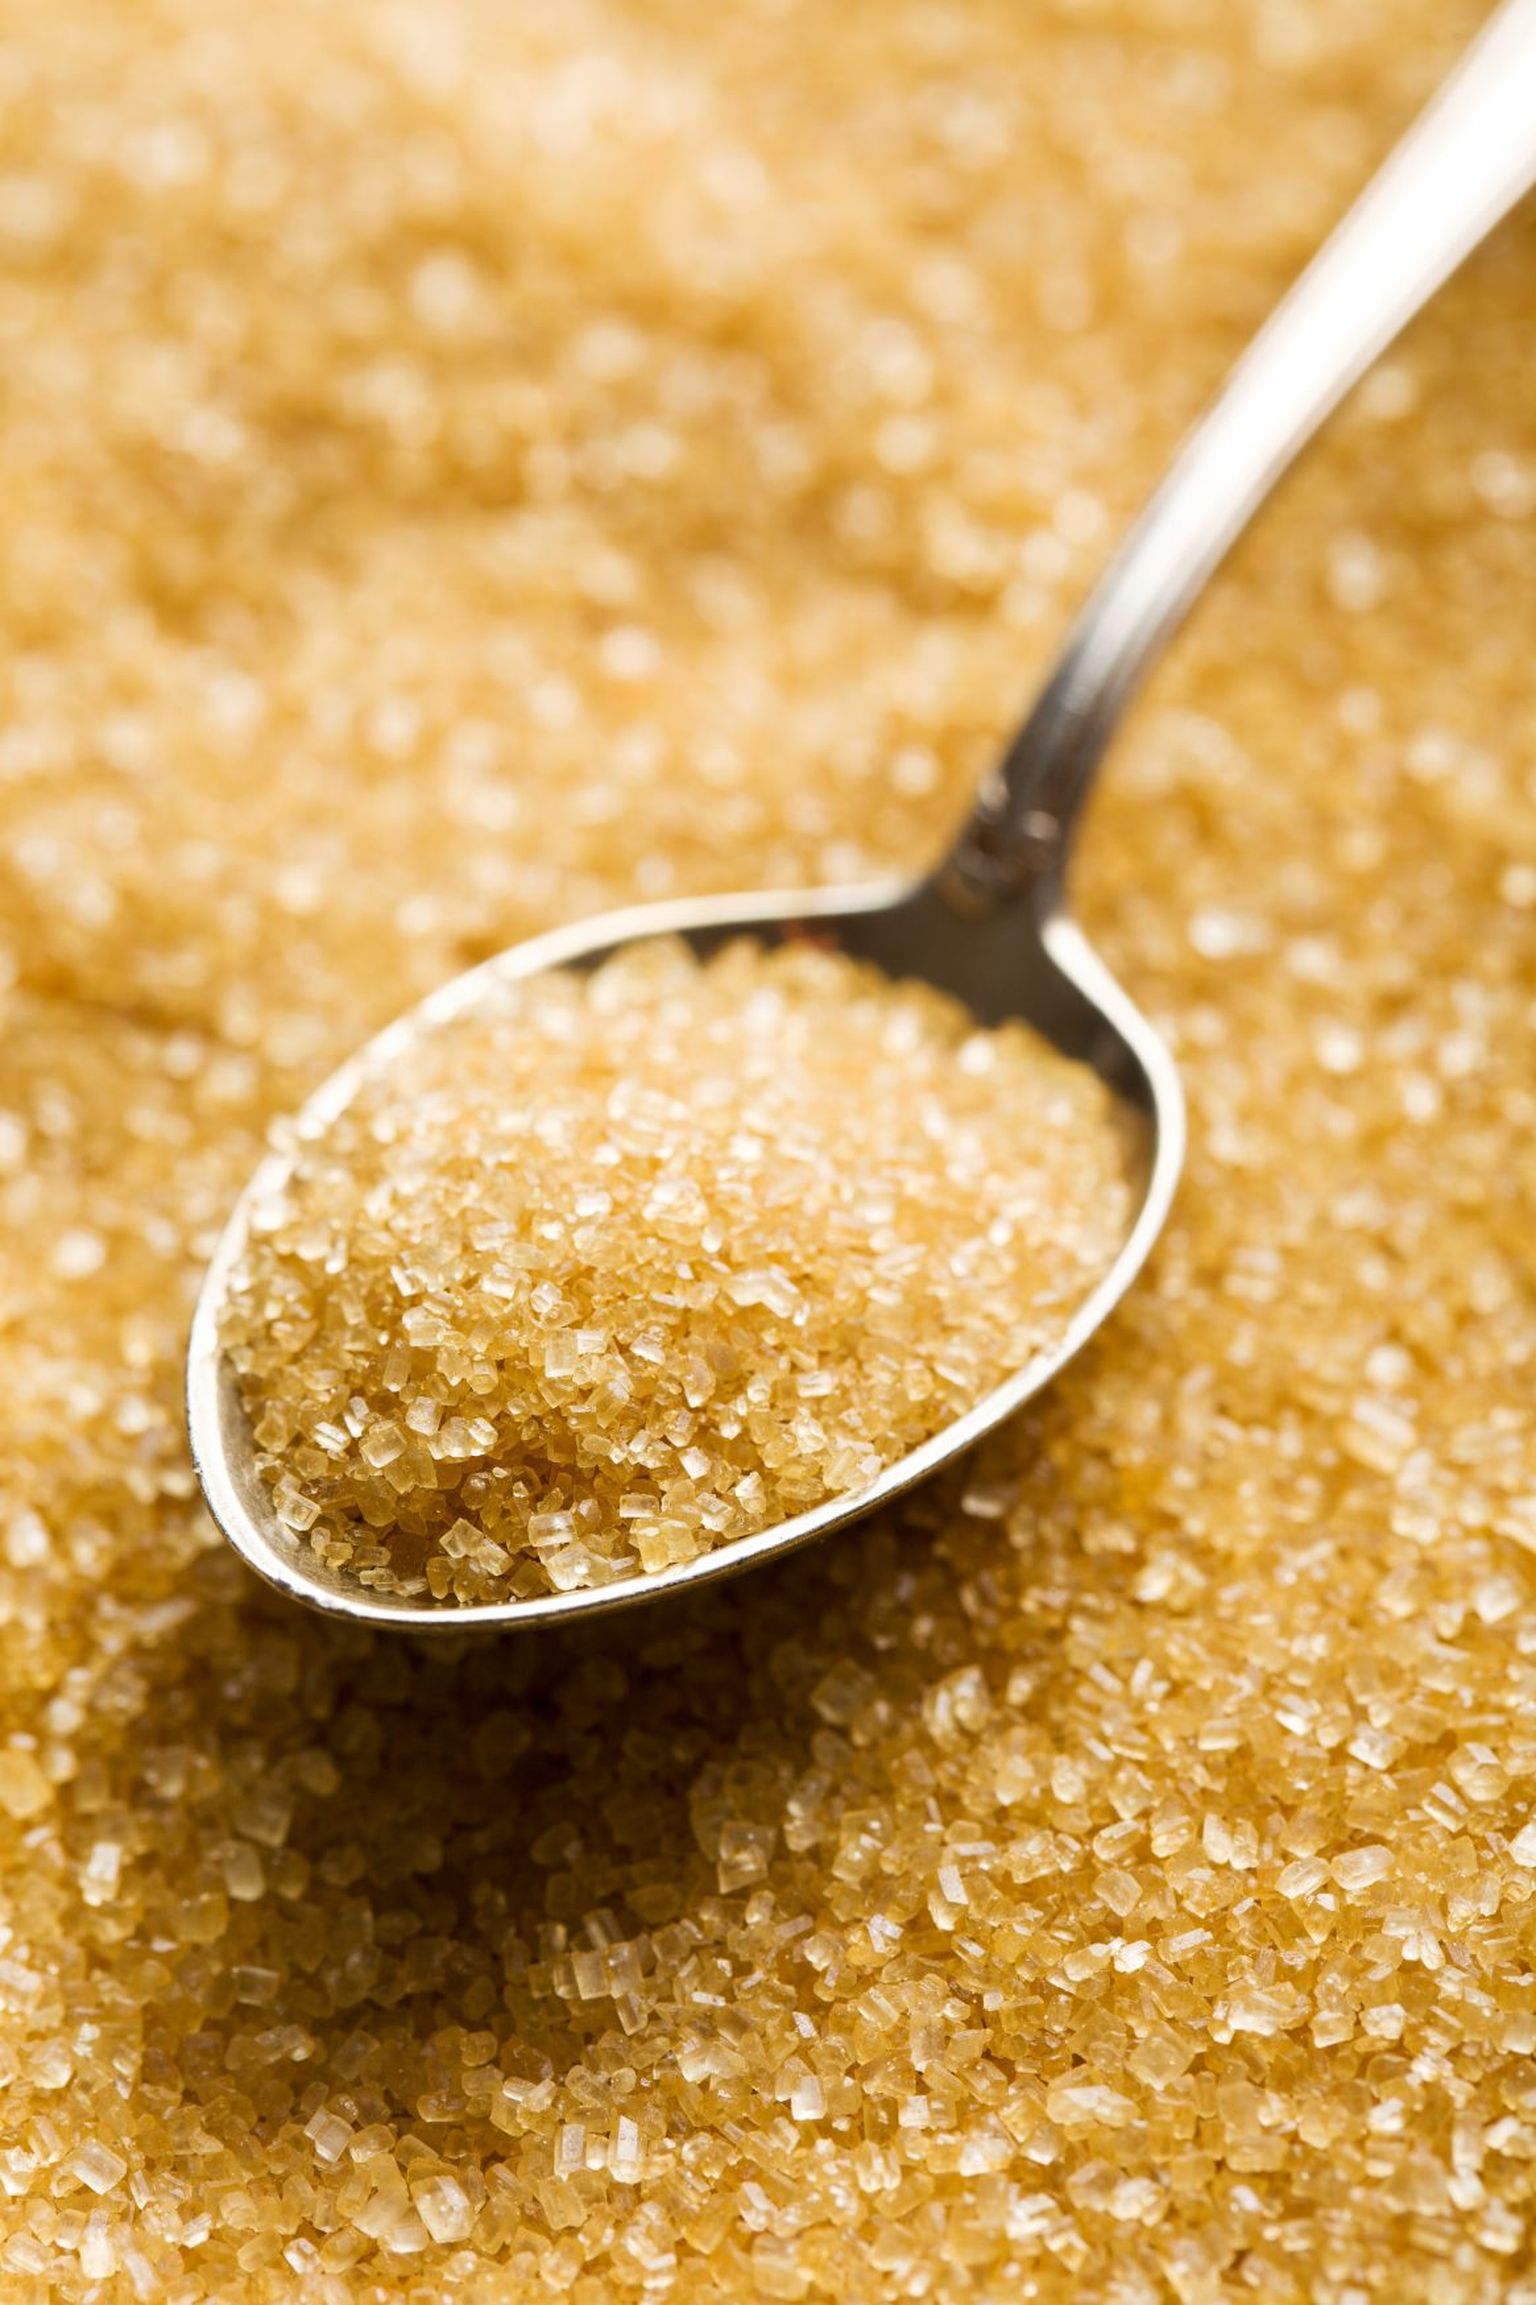 Oma igapäevast menüüd üle vaadates ja kergelt korrigeerides on võimalik vähendada selles olevat suhkrukogust 62 grammi võrra.